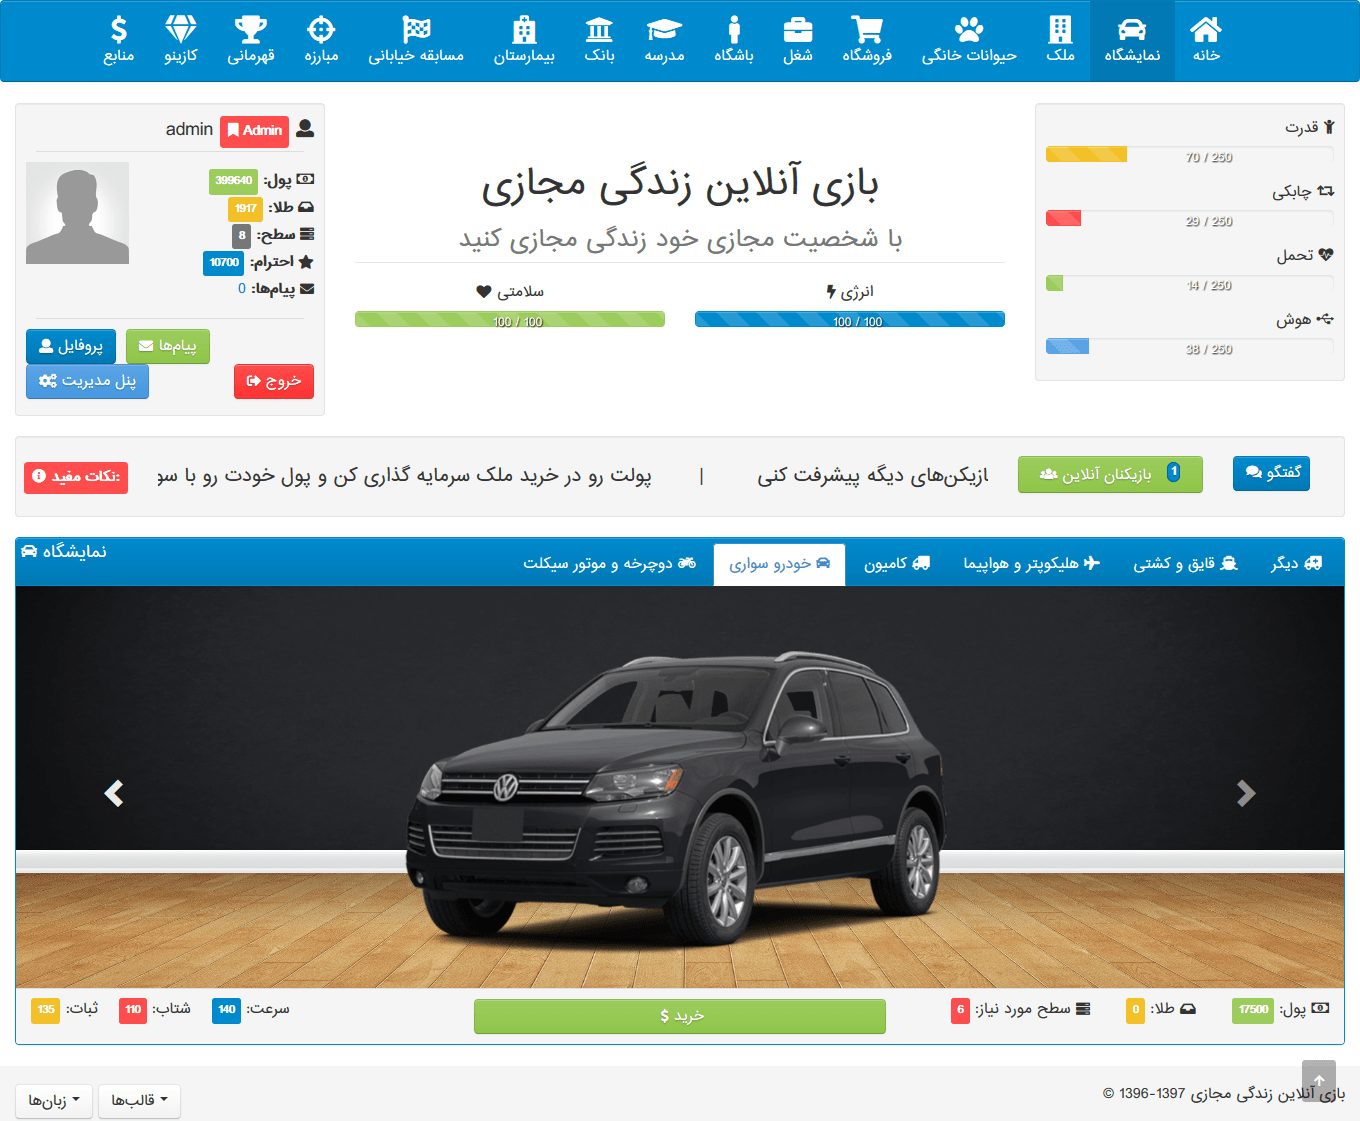 اسکریپت بازی آنلاین vCity فارسی